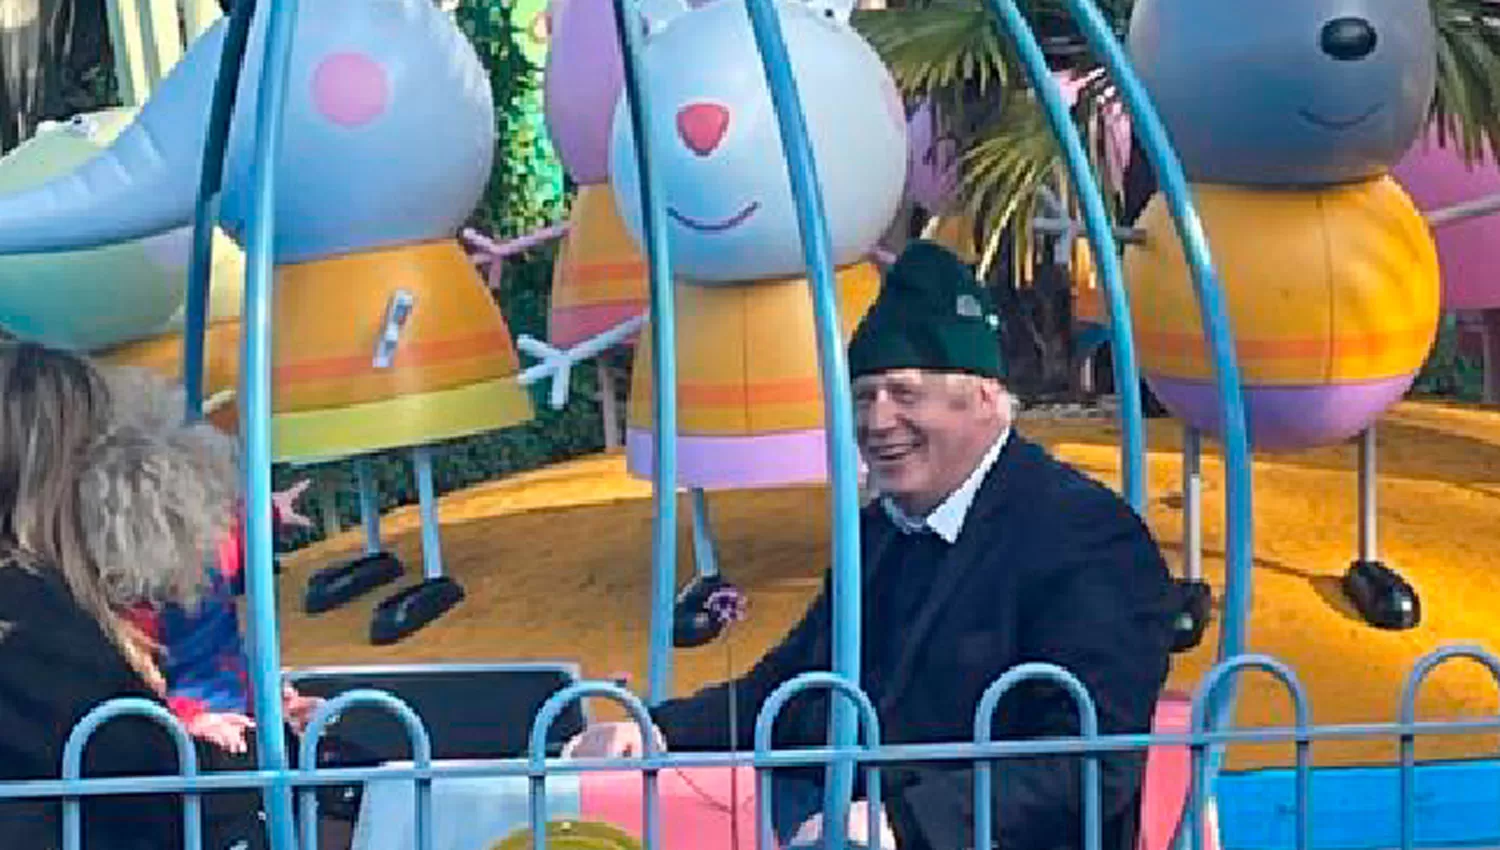 EN FAMILIA. Boris Johnson visitó junto a su esposa y su hija el parque temático de Peppa Pig.